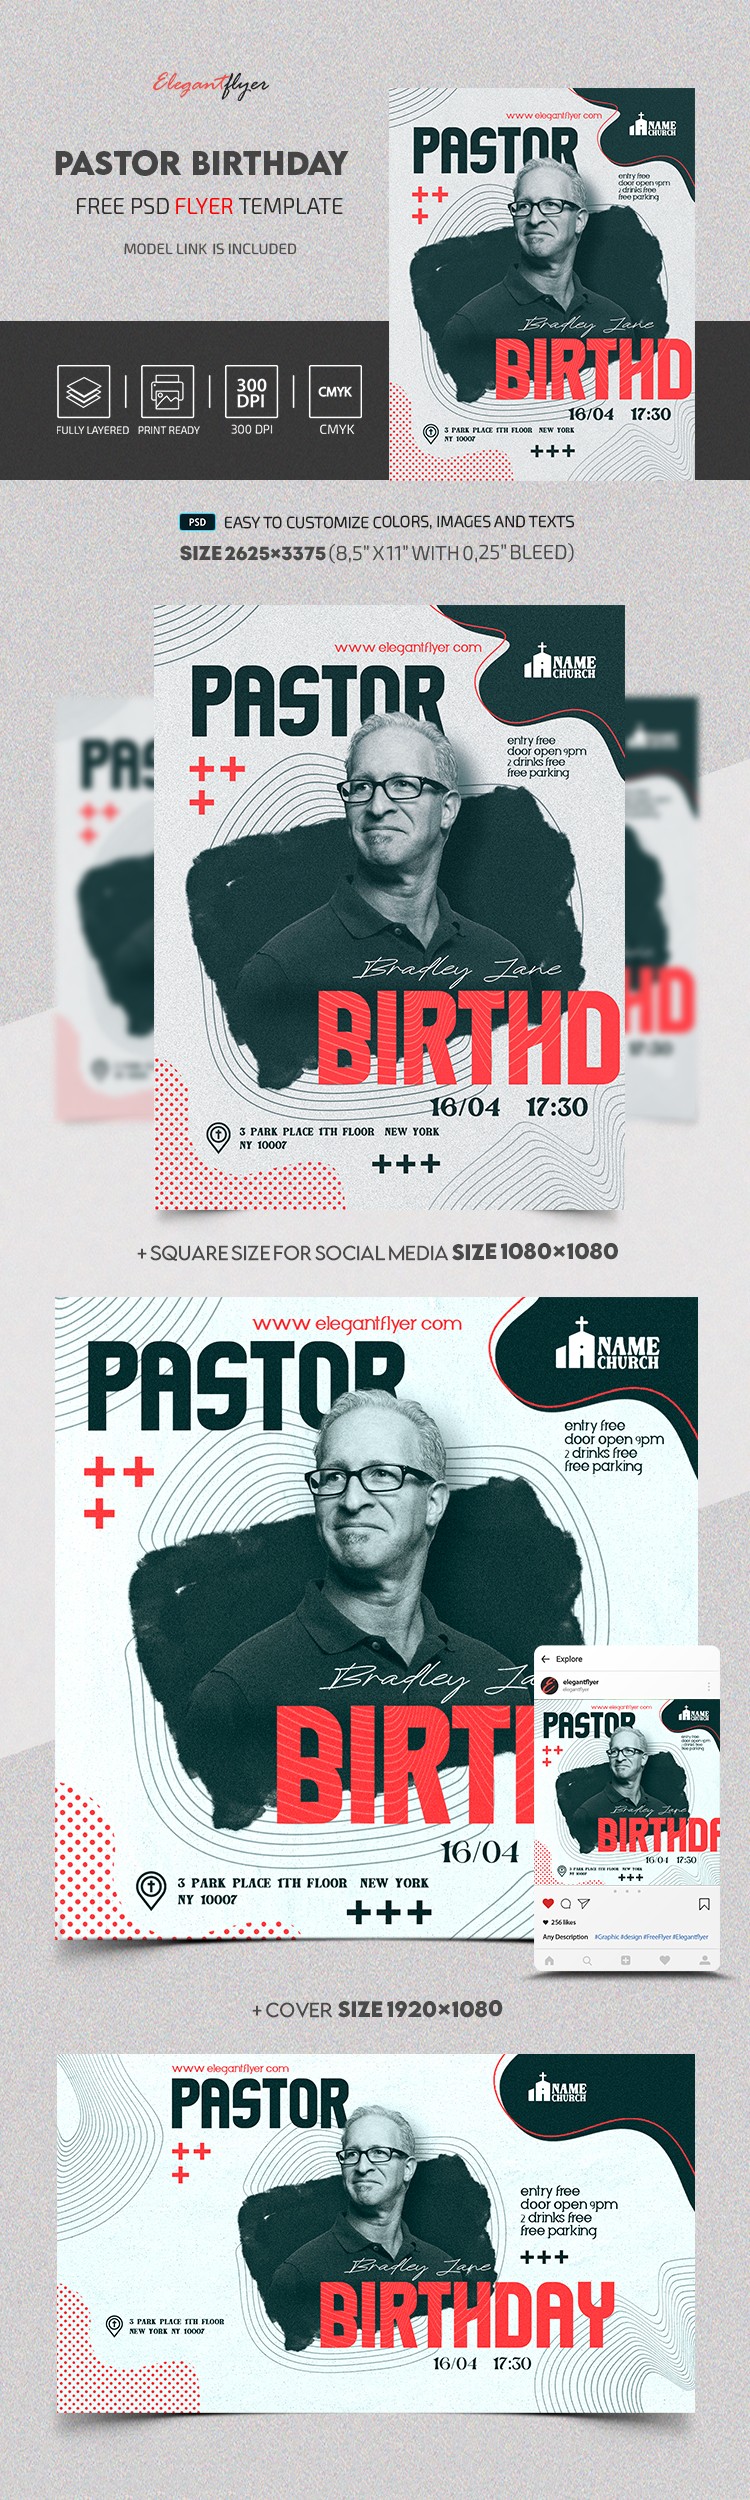 Pastor Birthday by ElegantFlyer